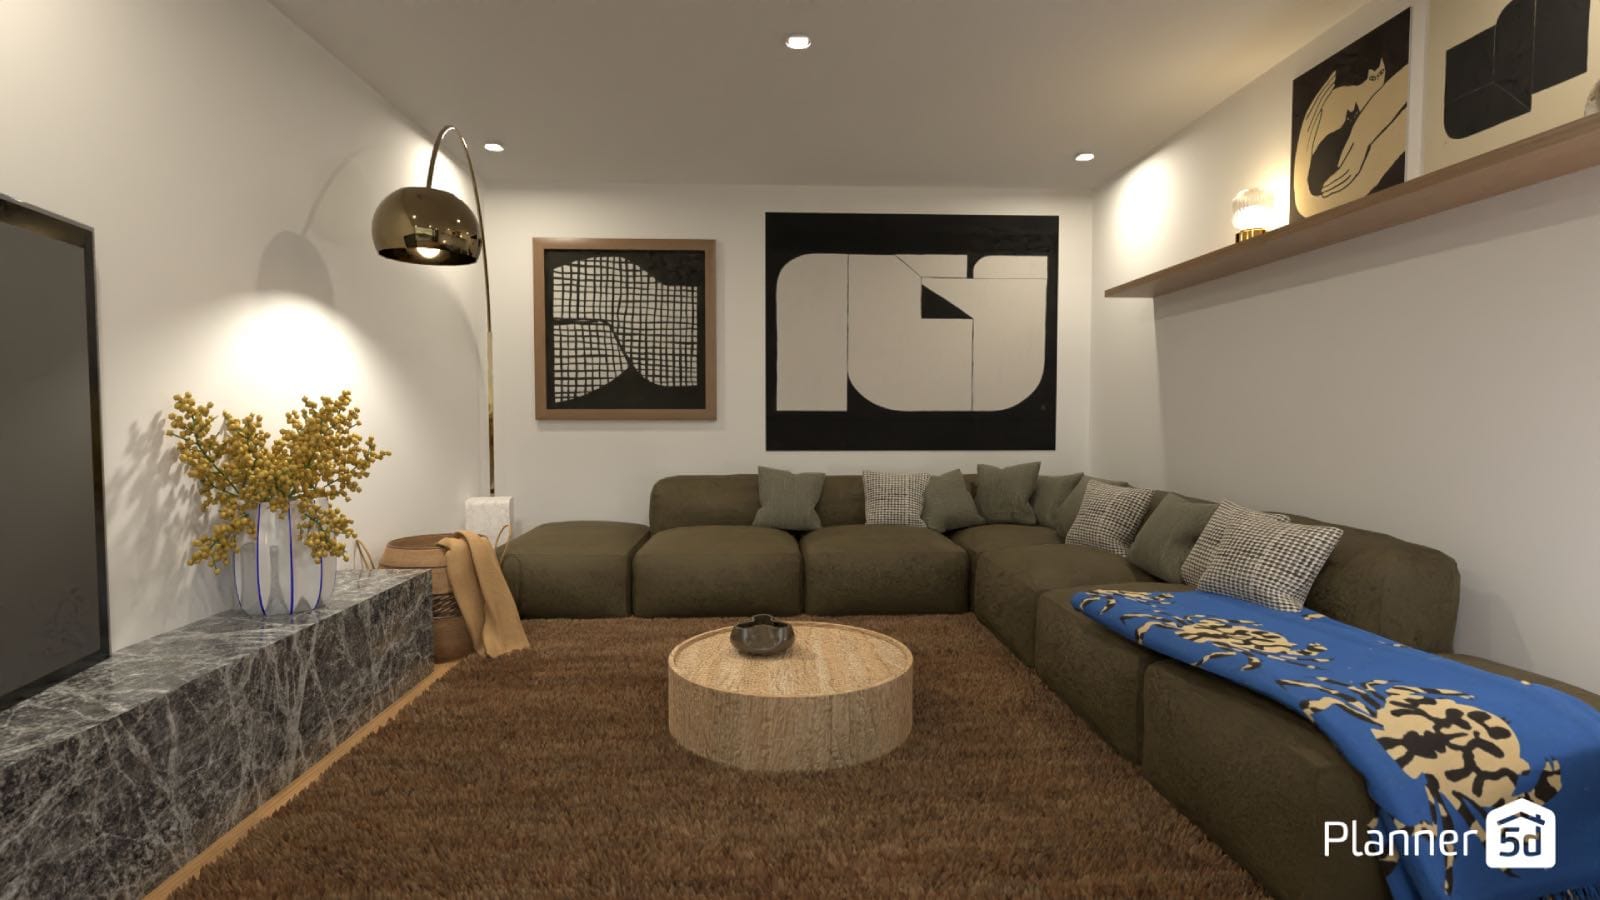 modern living room render, interior design software planner 5D